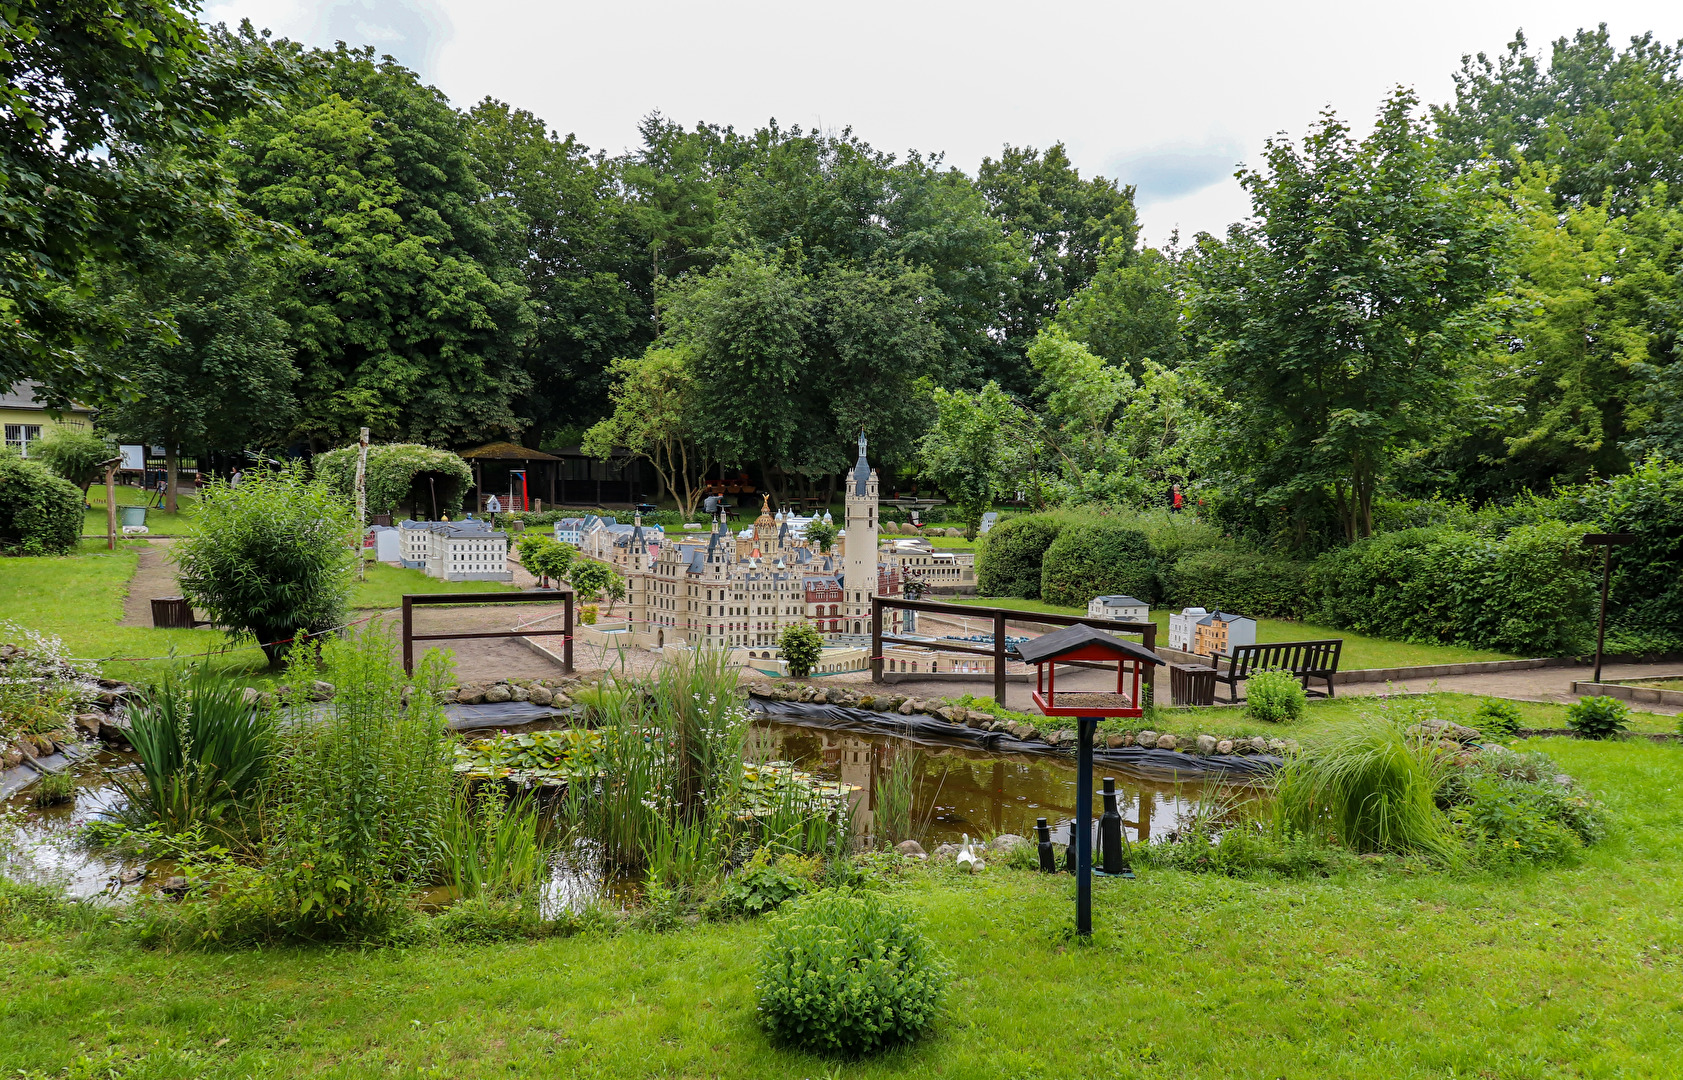 Miniaturpark " Lütt Schwerin "